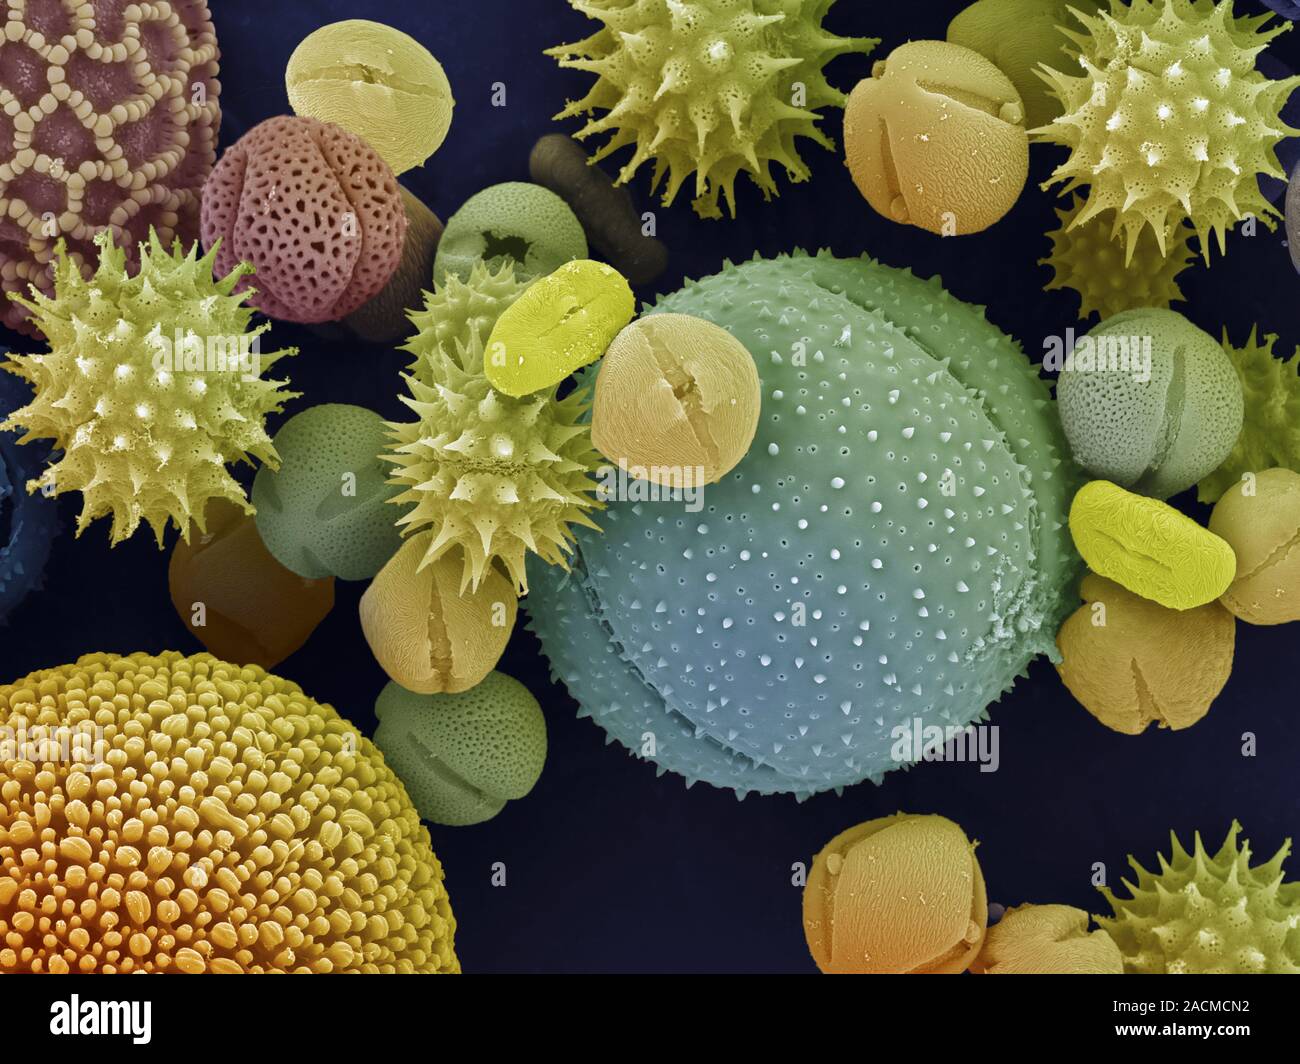 Исследование пыльцы. Пыльцевые зерна под микроскопом. Пыльца цветковых растений под микроскопом. Пыльца покрытосеменных под микроскопом. Пыльца микроскопия палинология.